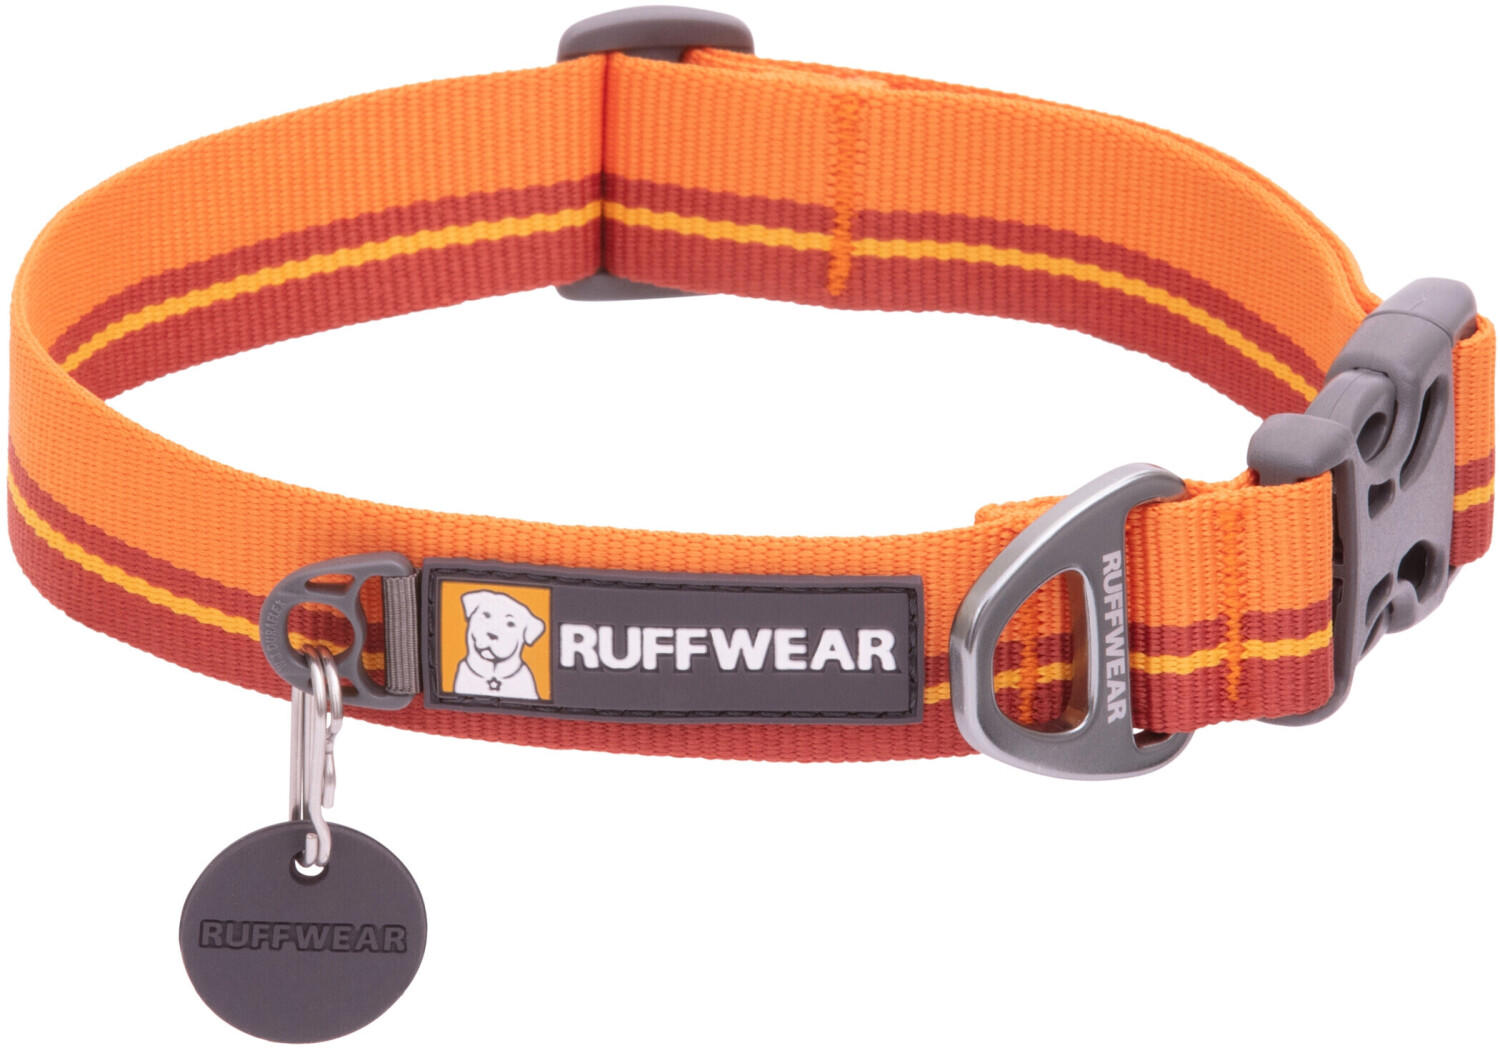 Ruffwear Flat Out collar